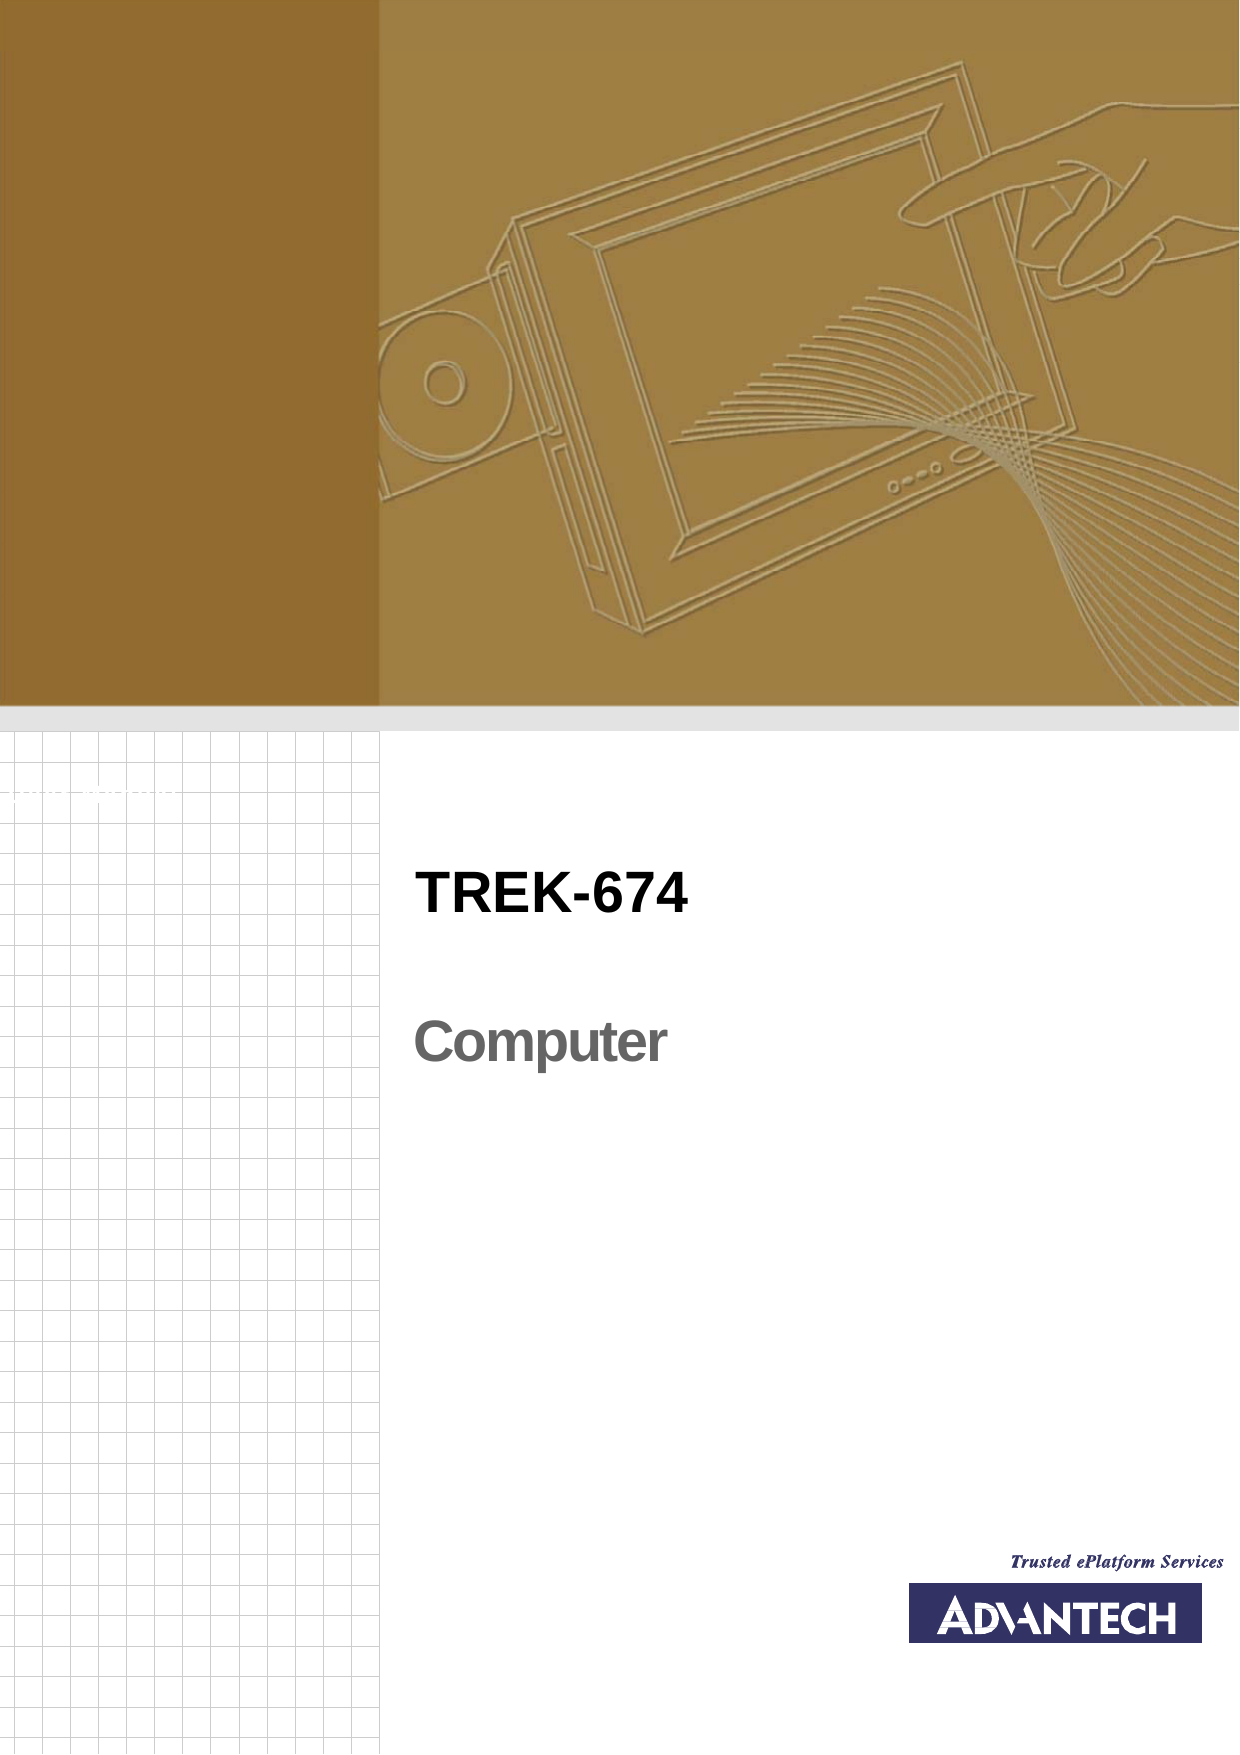         User Manual TREK-674 Computer   